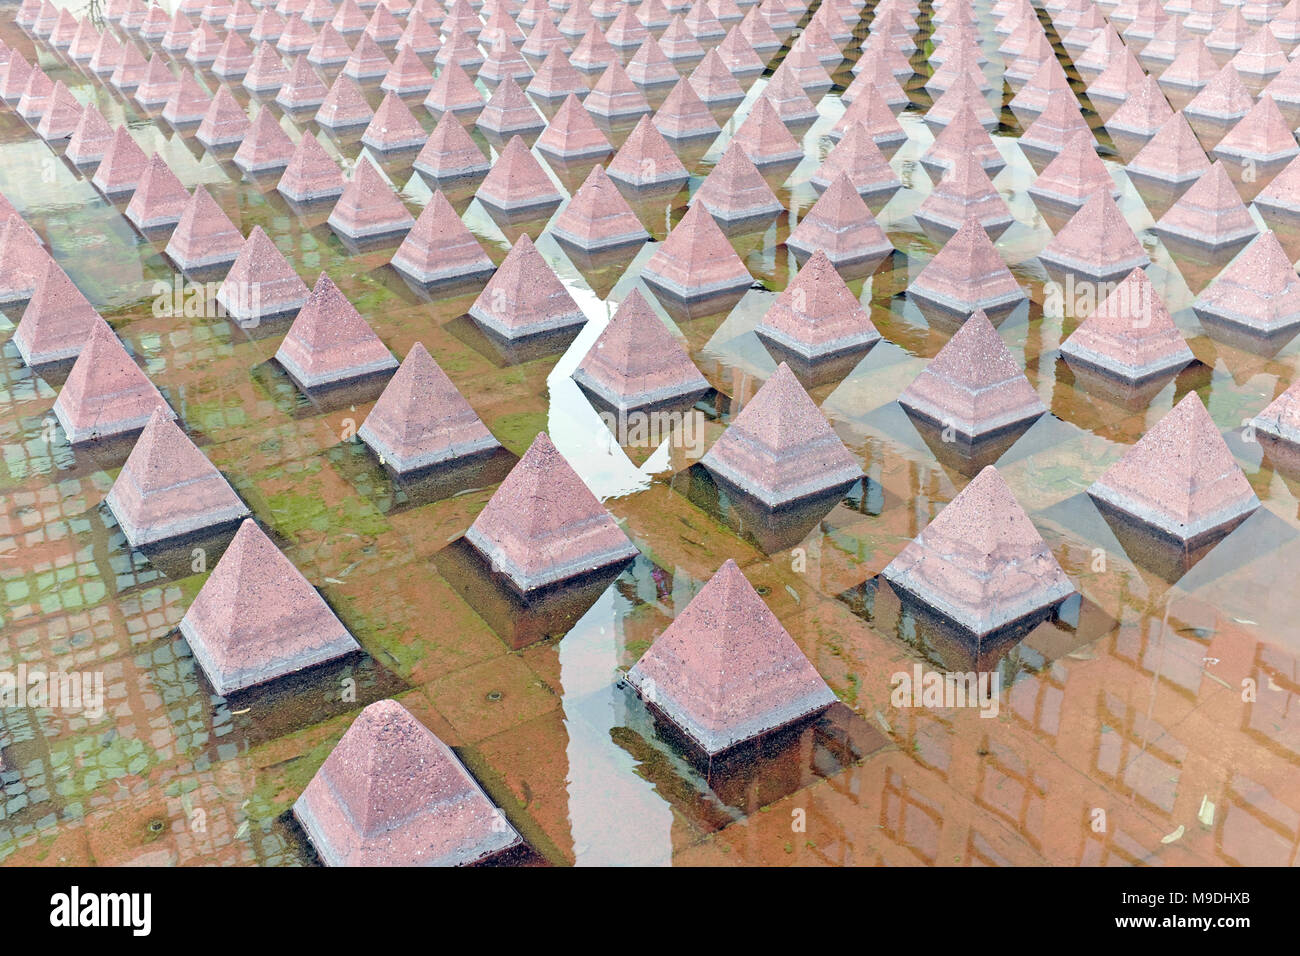 Más de 1000 pequeñas pirámides de concreto rojo quemado reflejadas en el agua, representando la construcción azteca usando piedra volcánica de Tezontle en Ciudad de México, México. Foto de stock